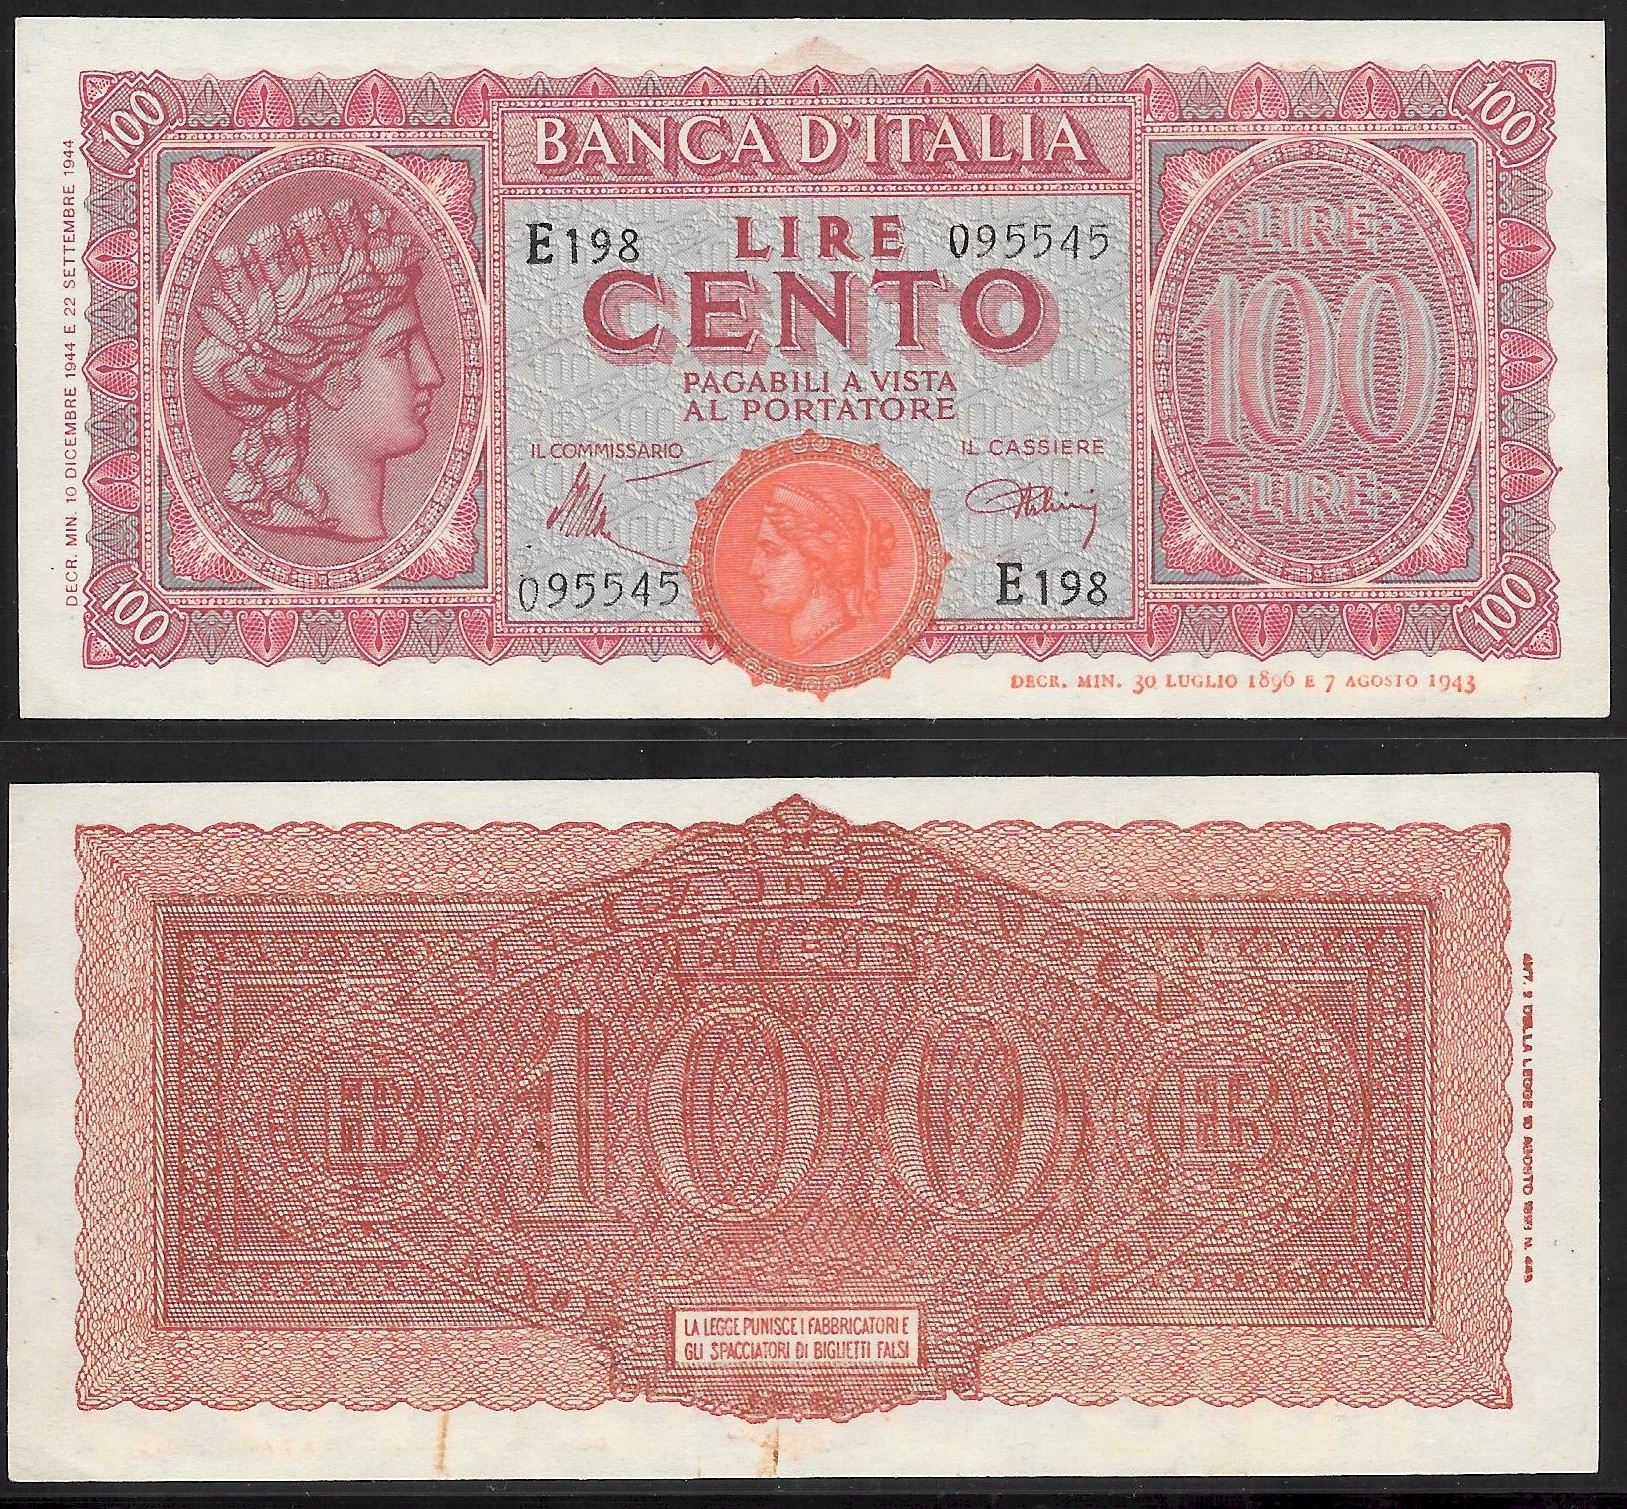 Luogotenenza - cento lire "Italia Turrita" -dec. min. 10-12-1944